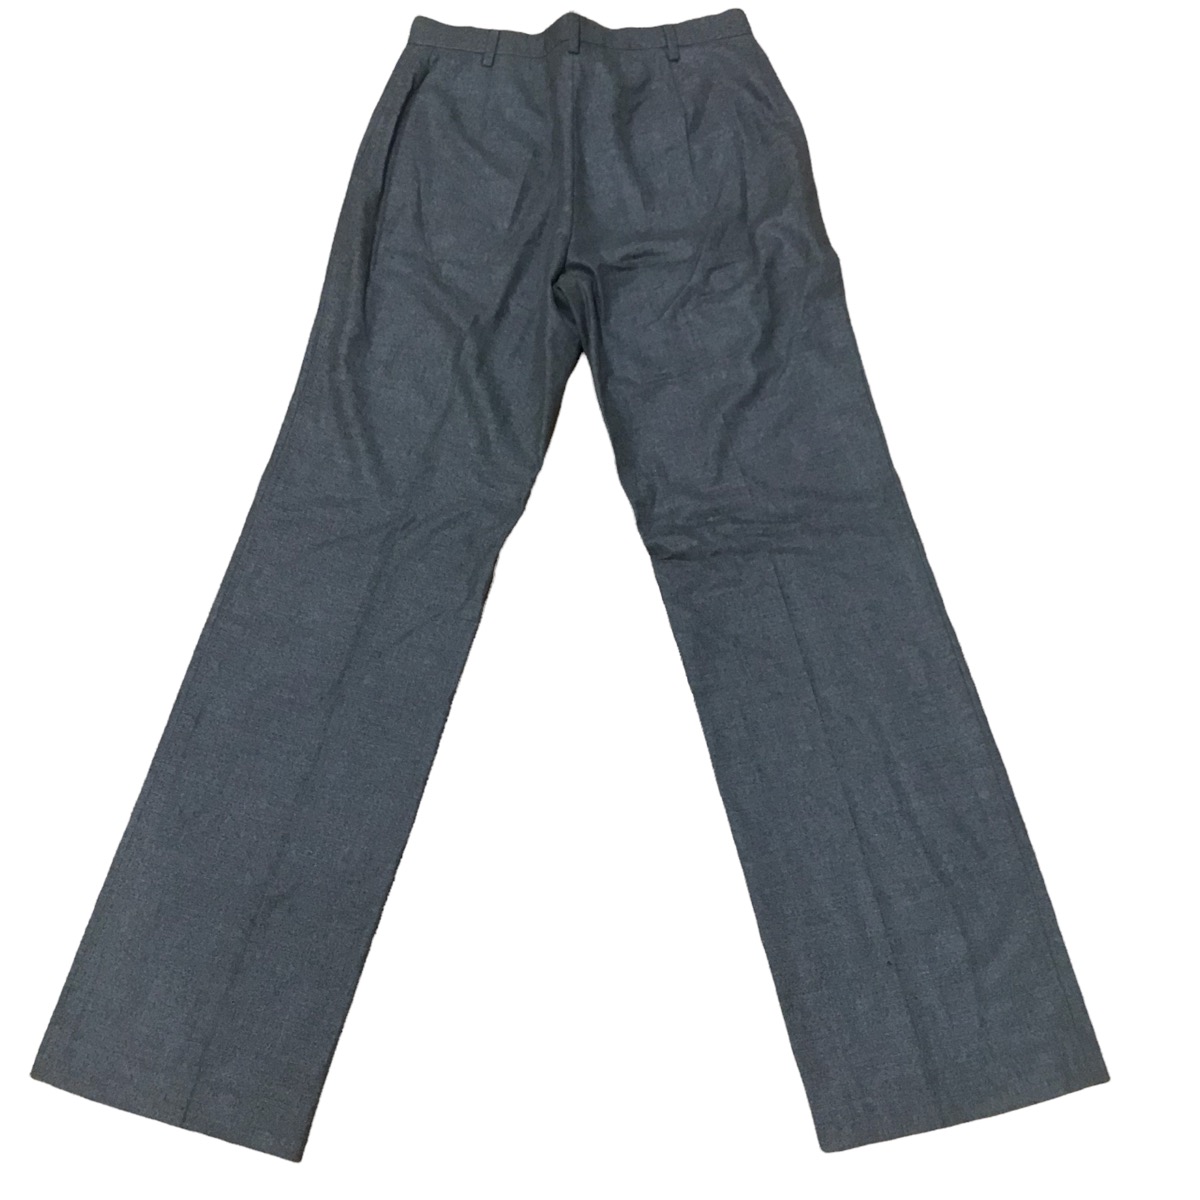 Jil sander taylor made casmere pants - 2